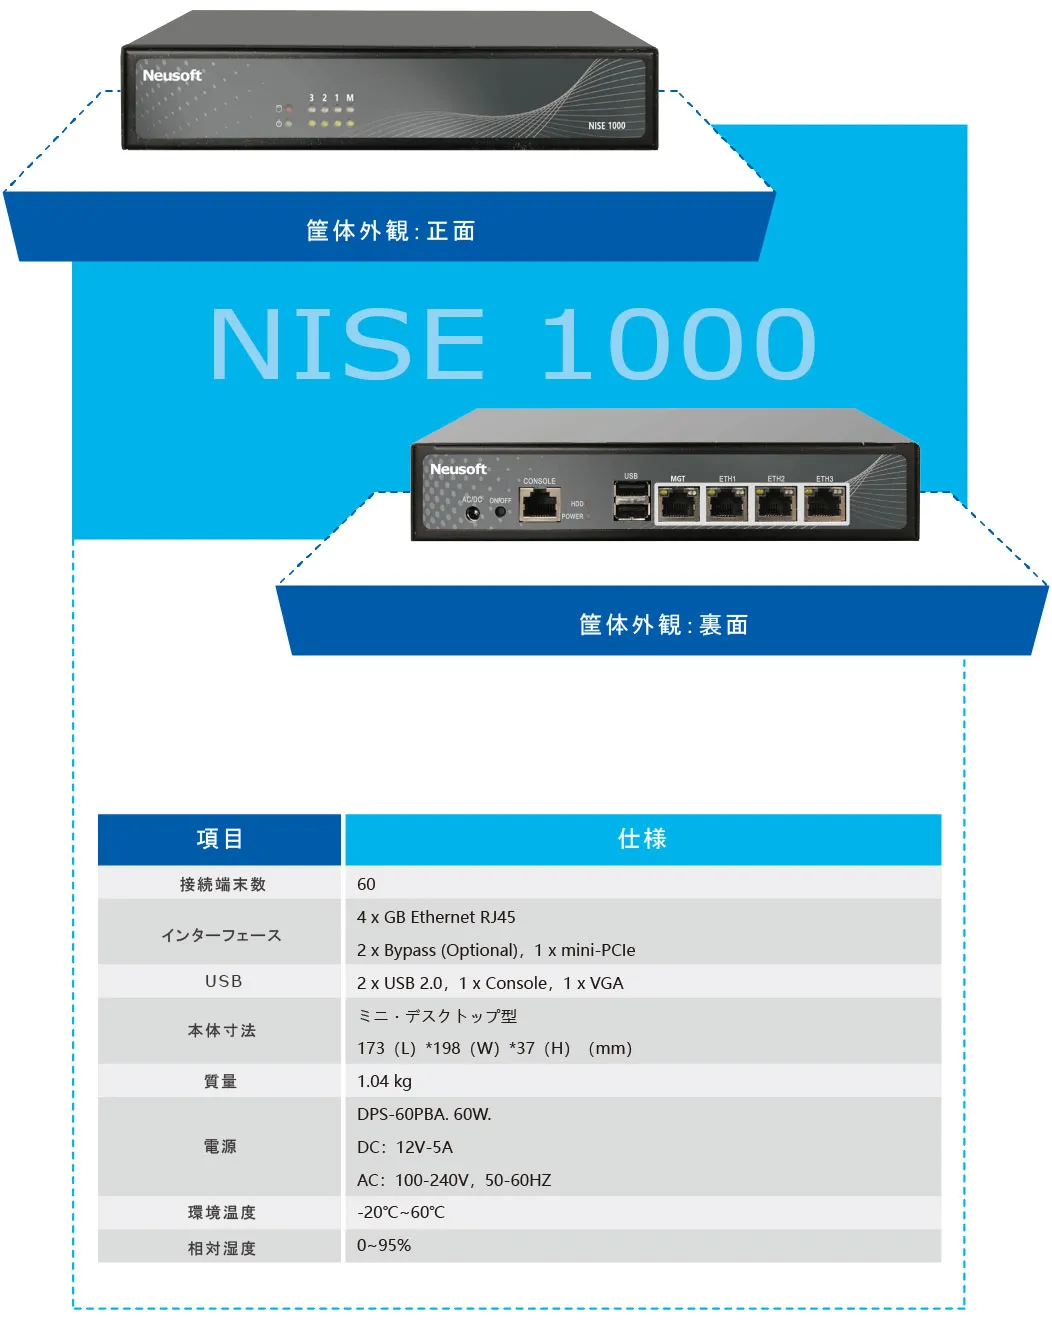 NISE1000 ハードウェア仕様＆スペック